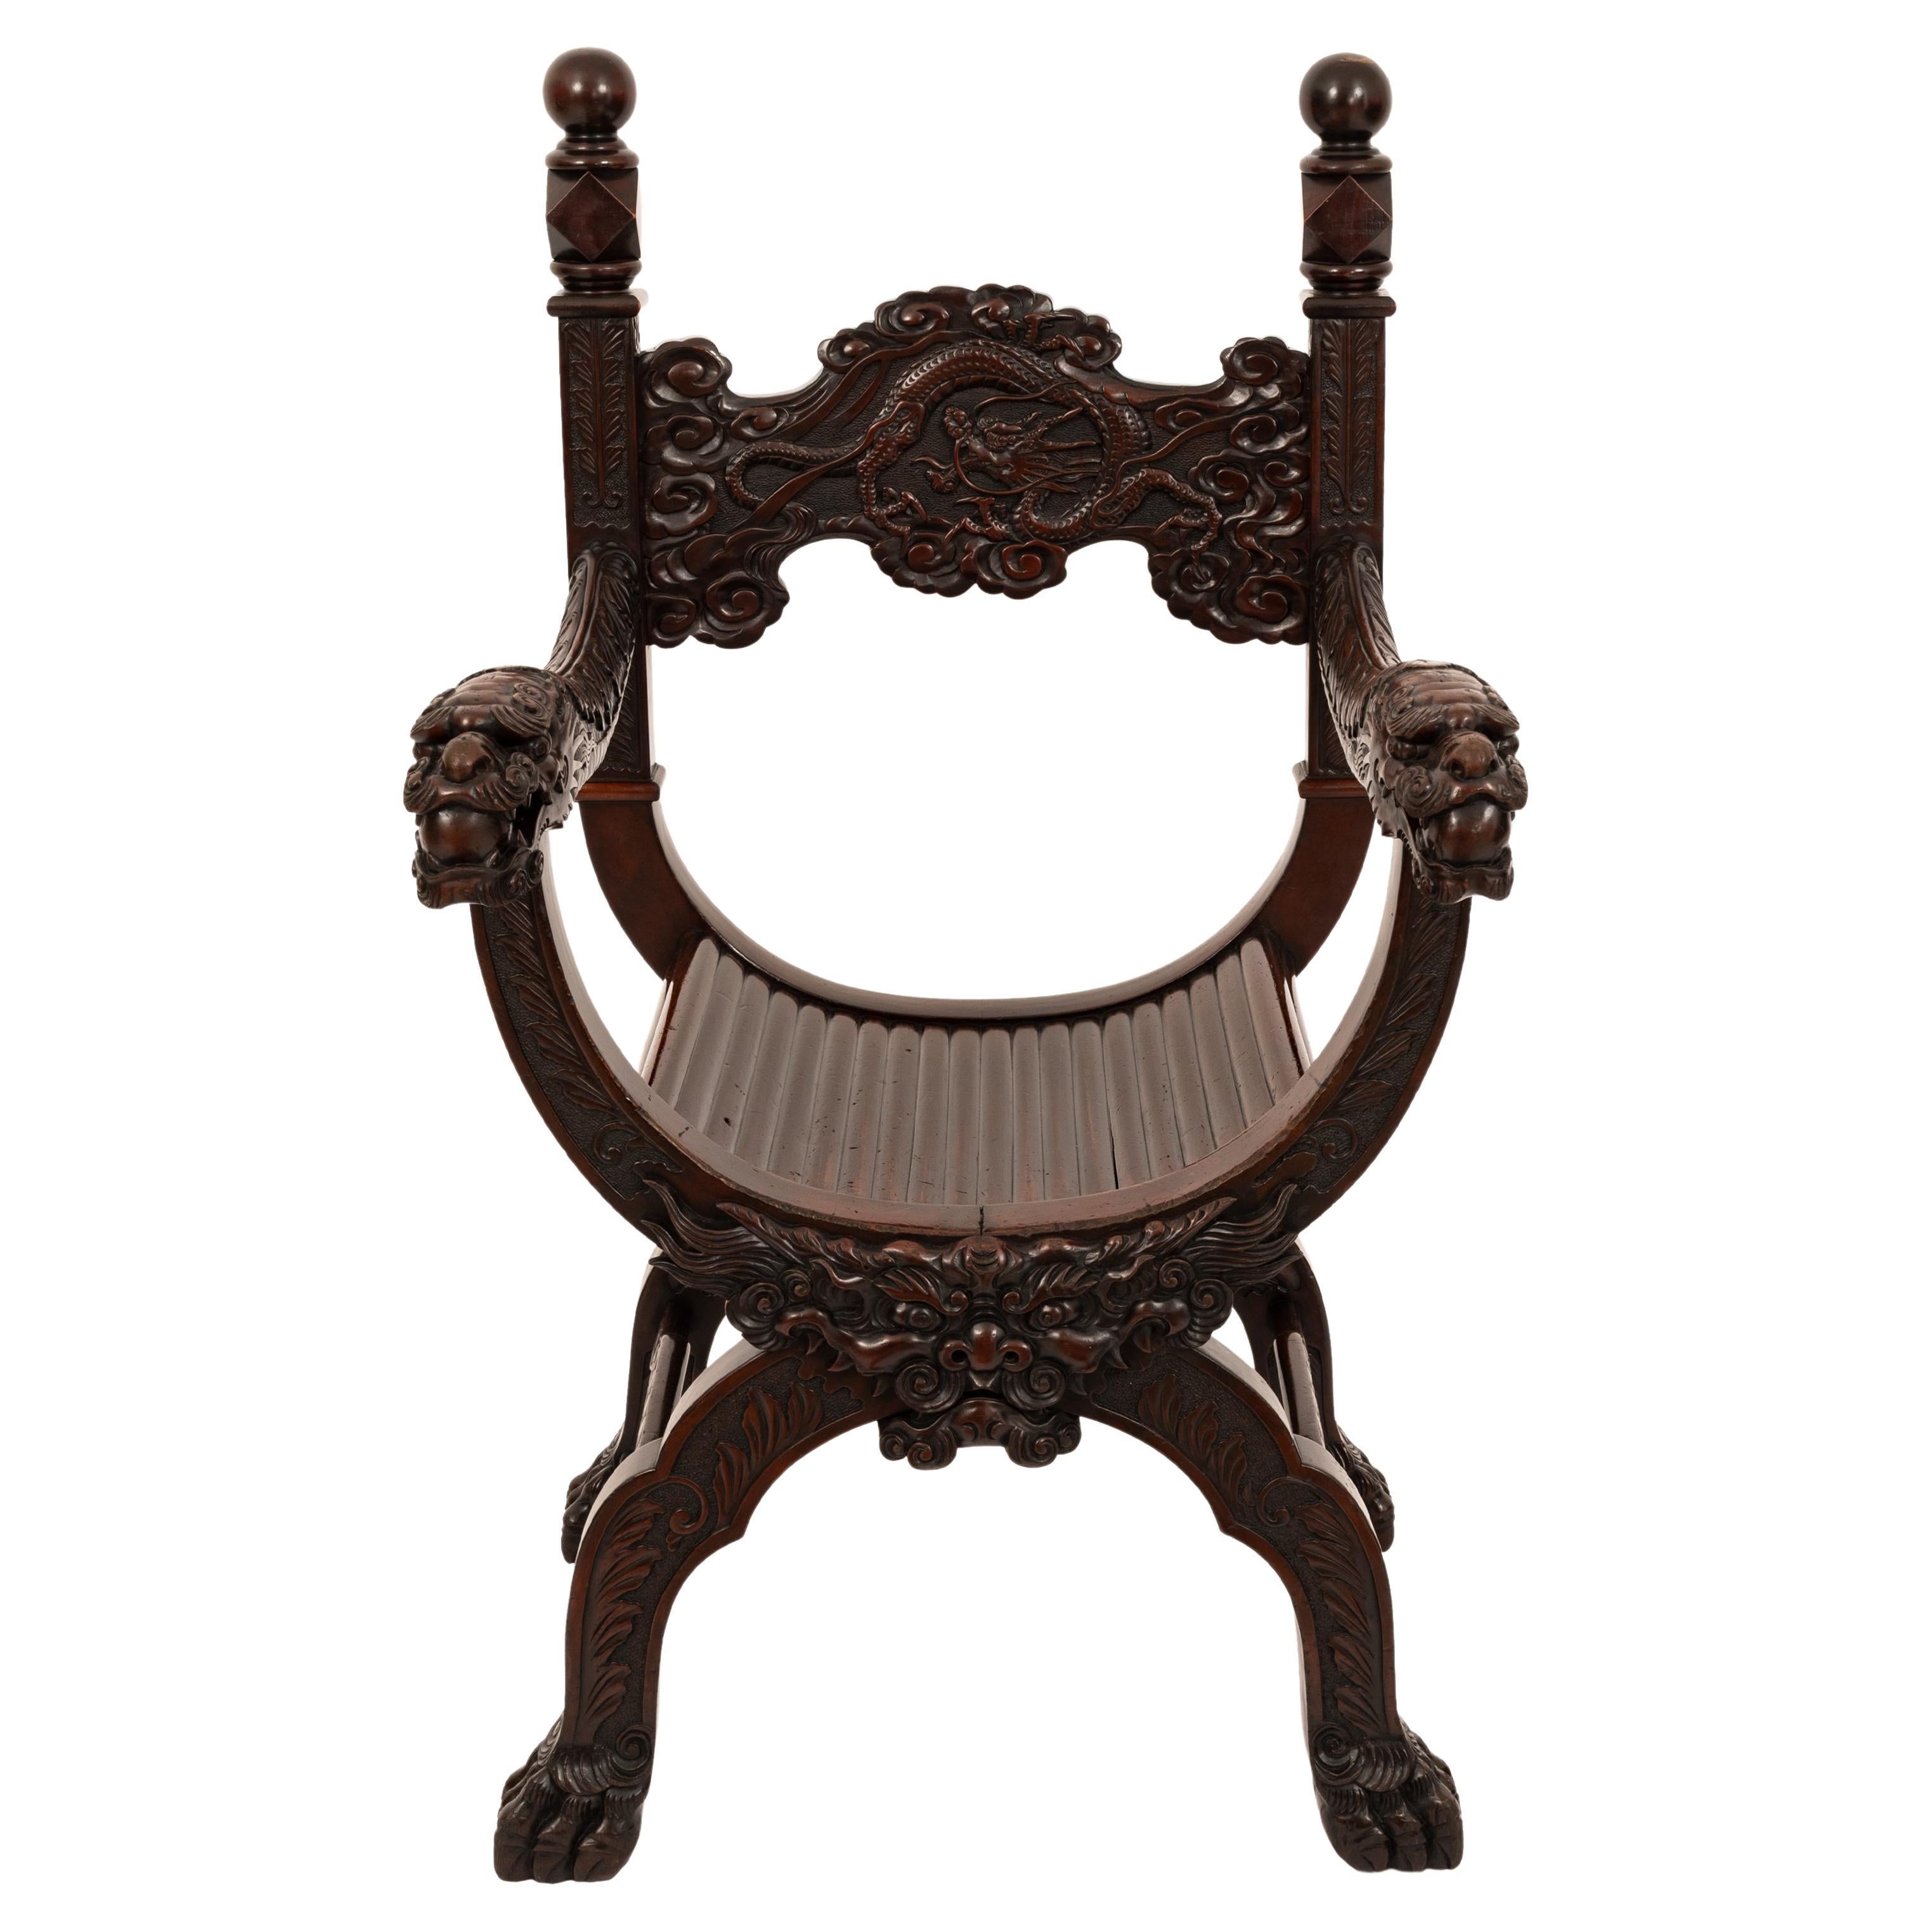 Une très rare chaise de dragon Savanarola sculptée américaine, par Robert Mitchell, circa 1900.
Cette chaise très inhabituelle de Robert Mitchell (anciennement Mitchell et Rammelsberg) suit une forme Savanarola des chaises du XVe siècle de la